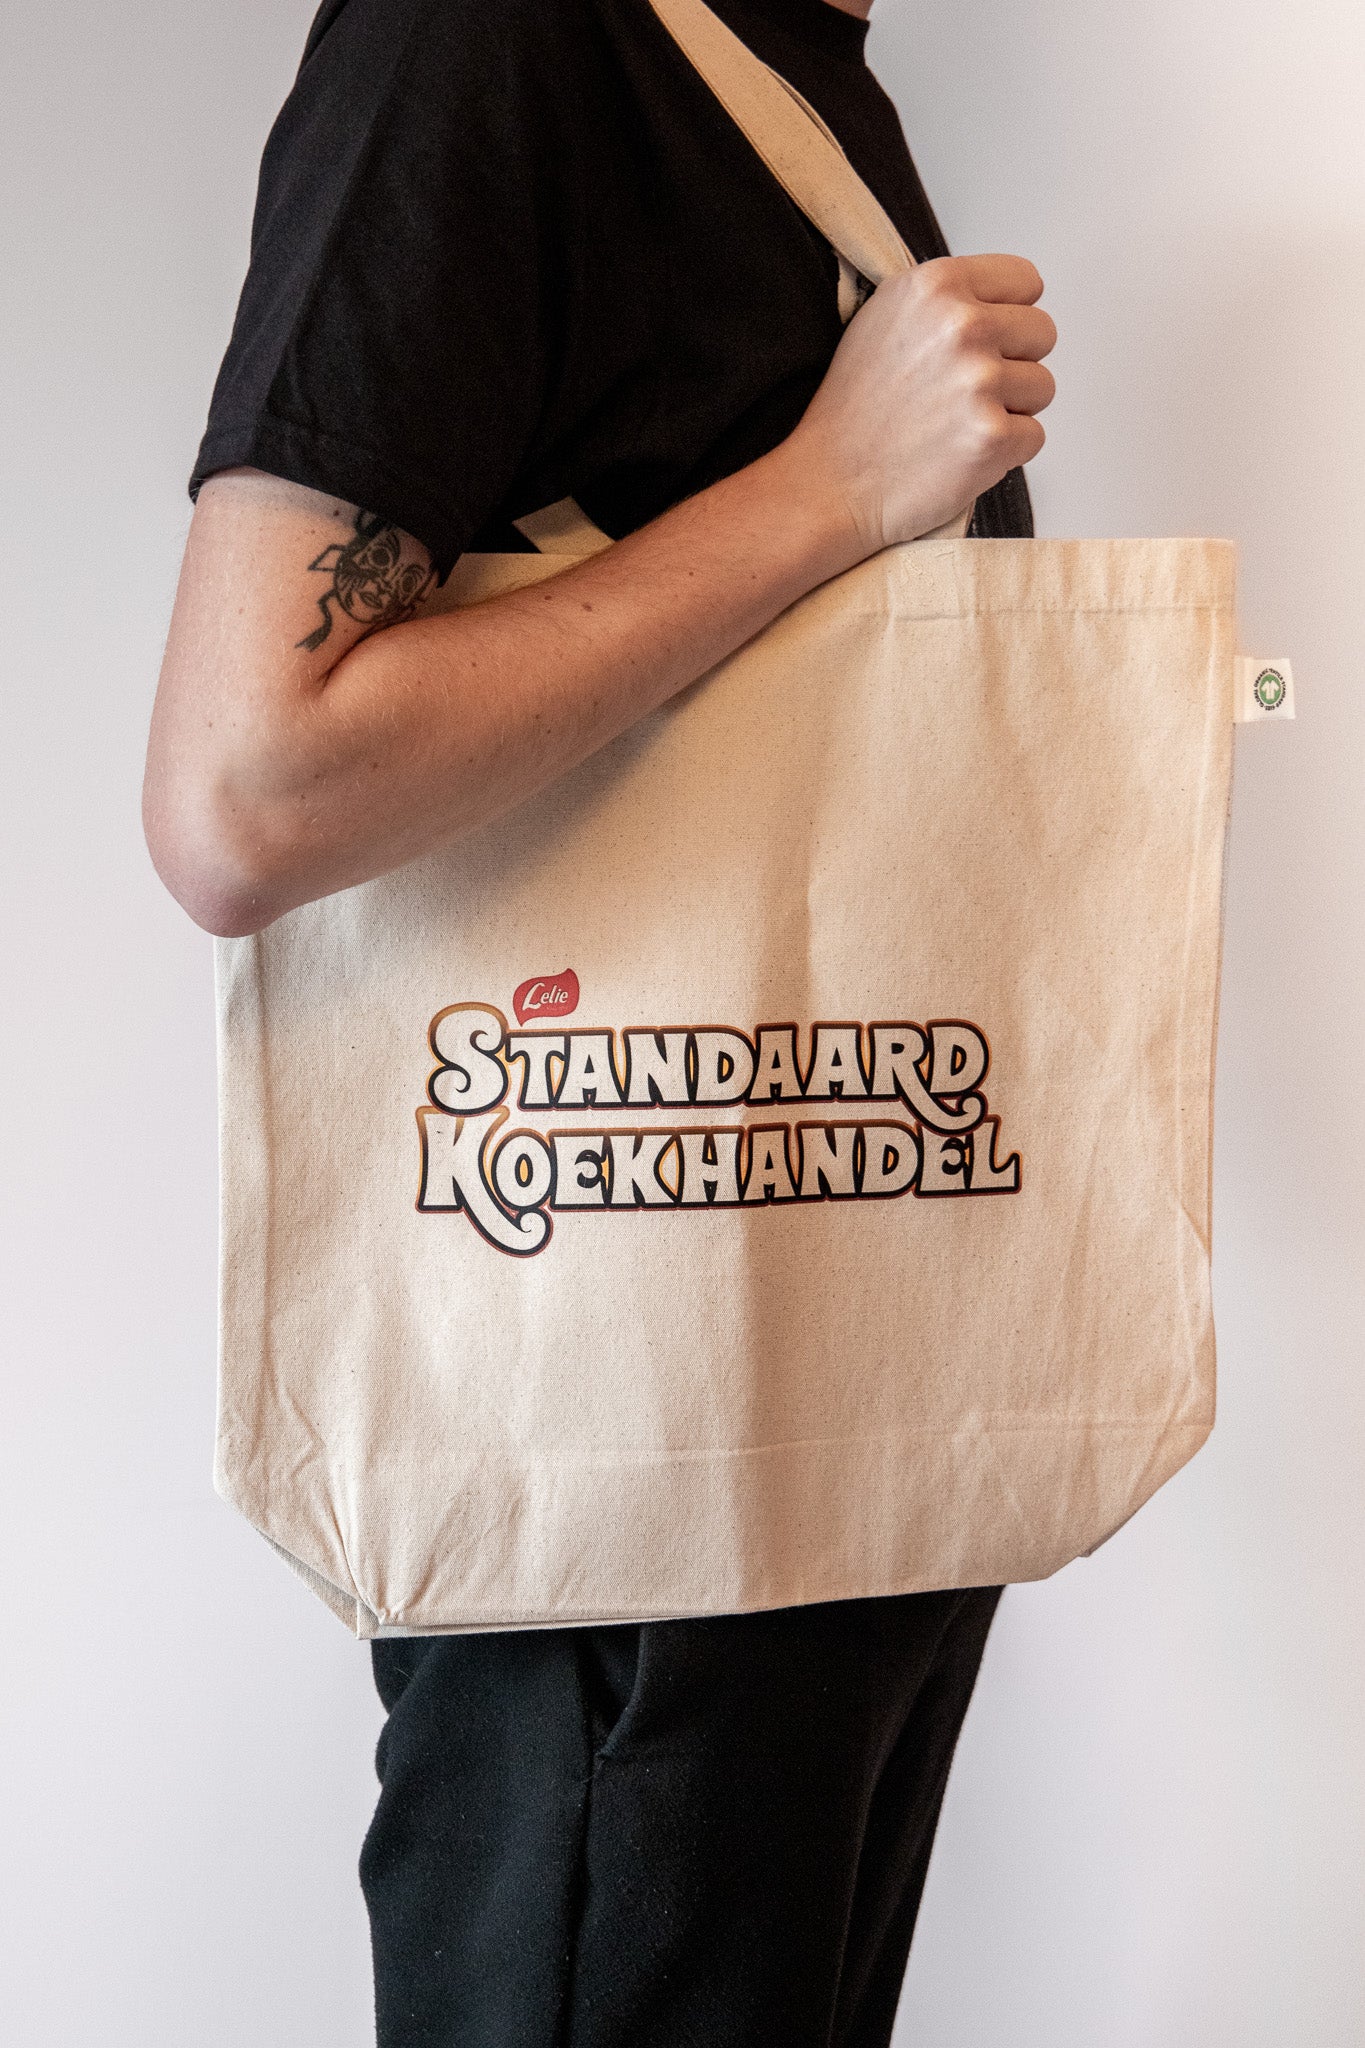 Lukas Lelie - "Standaard Koekhandel" (tote bag)